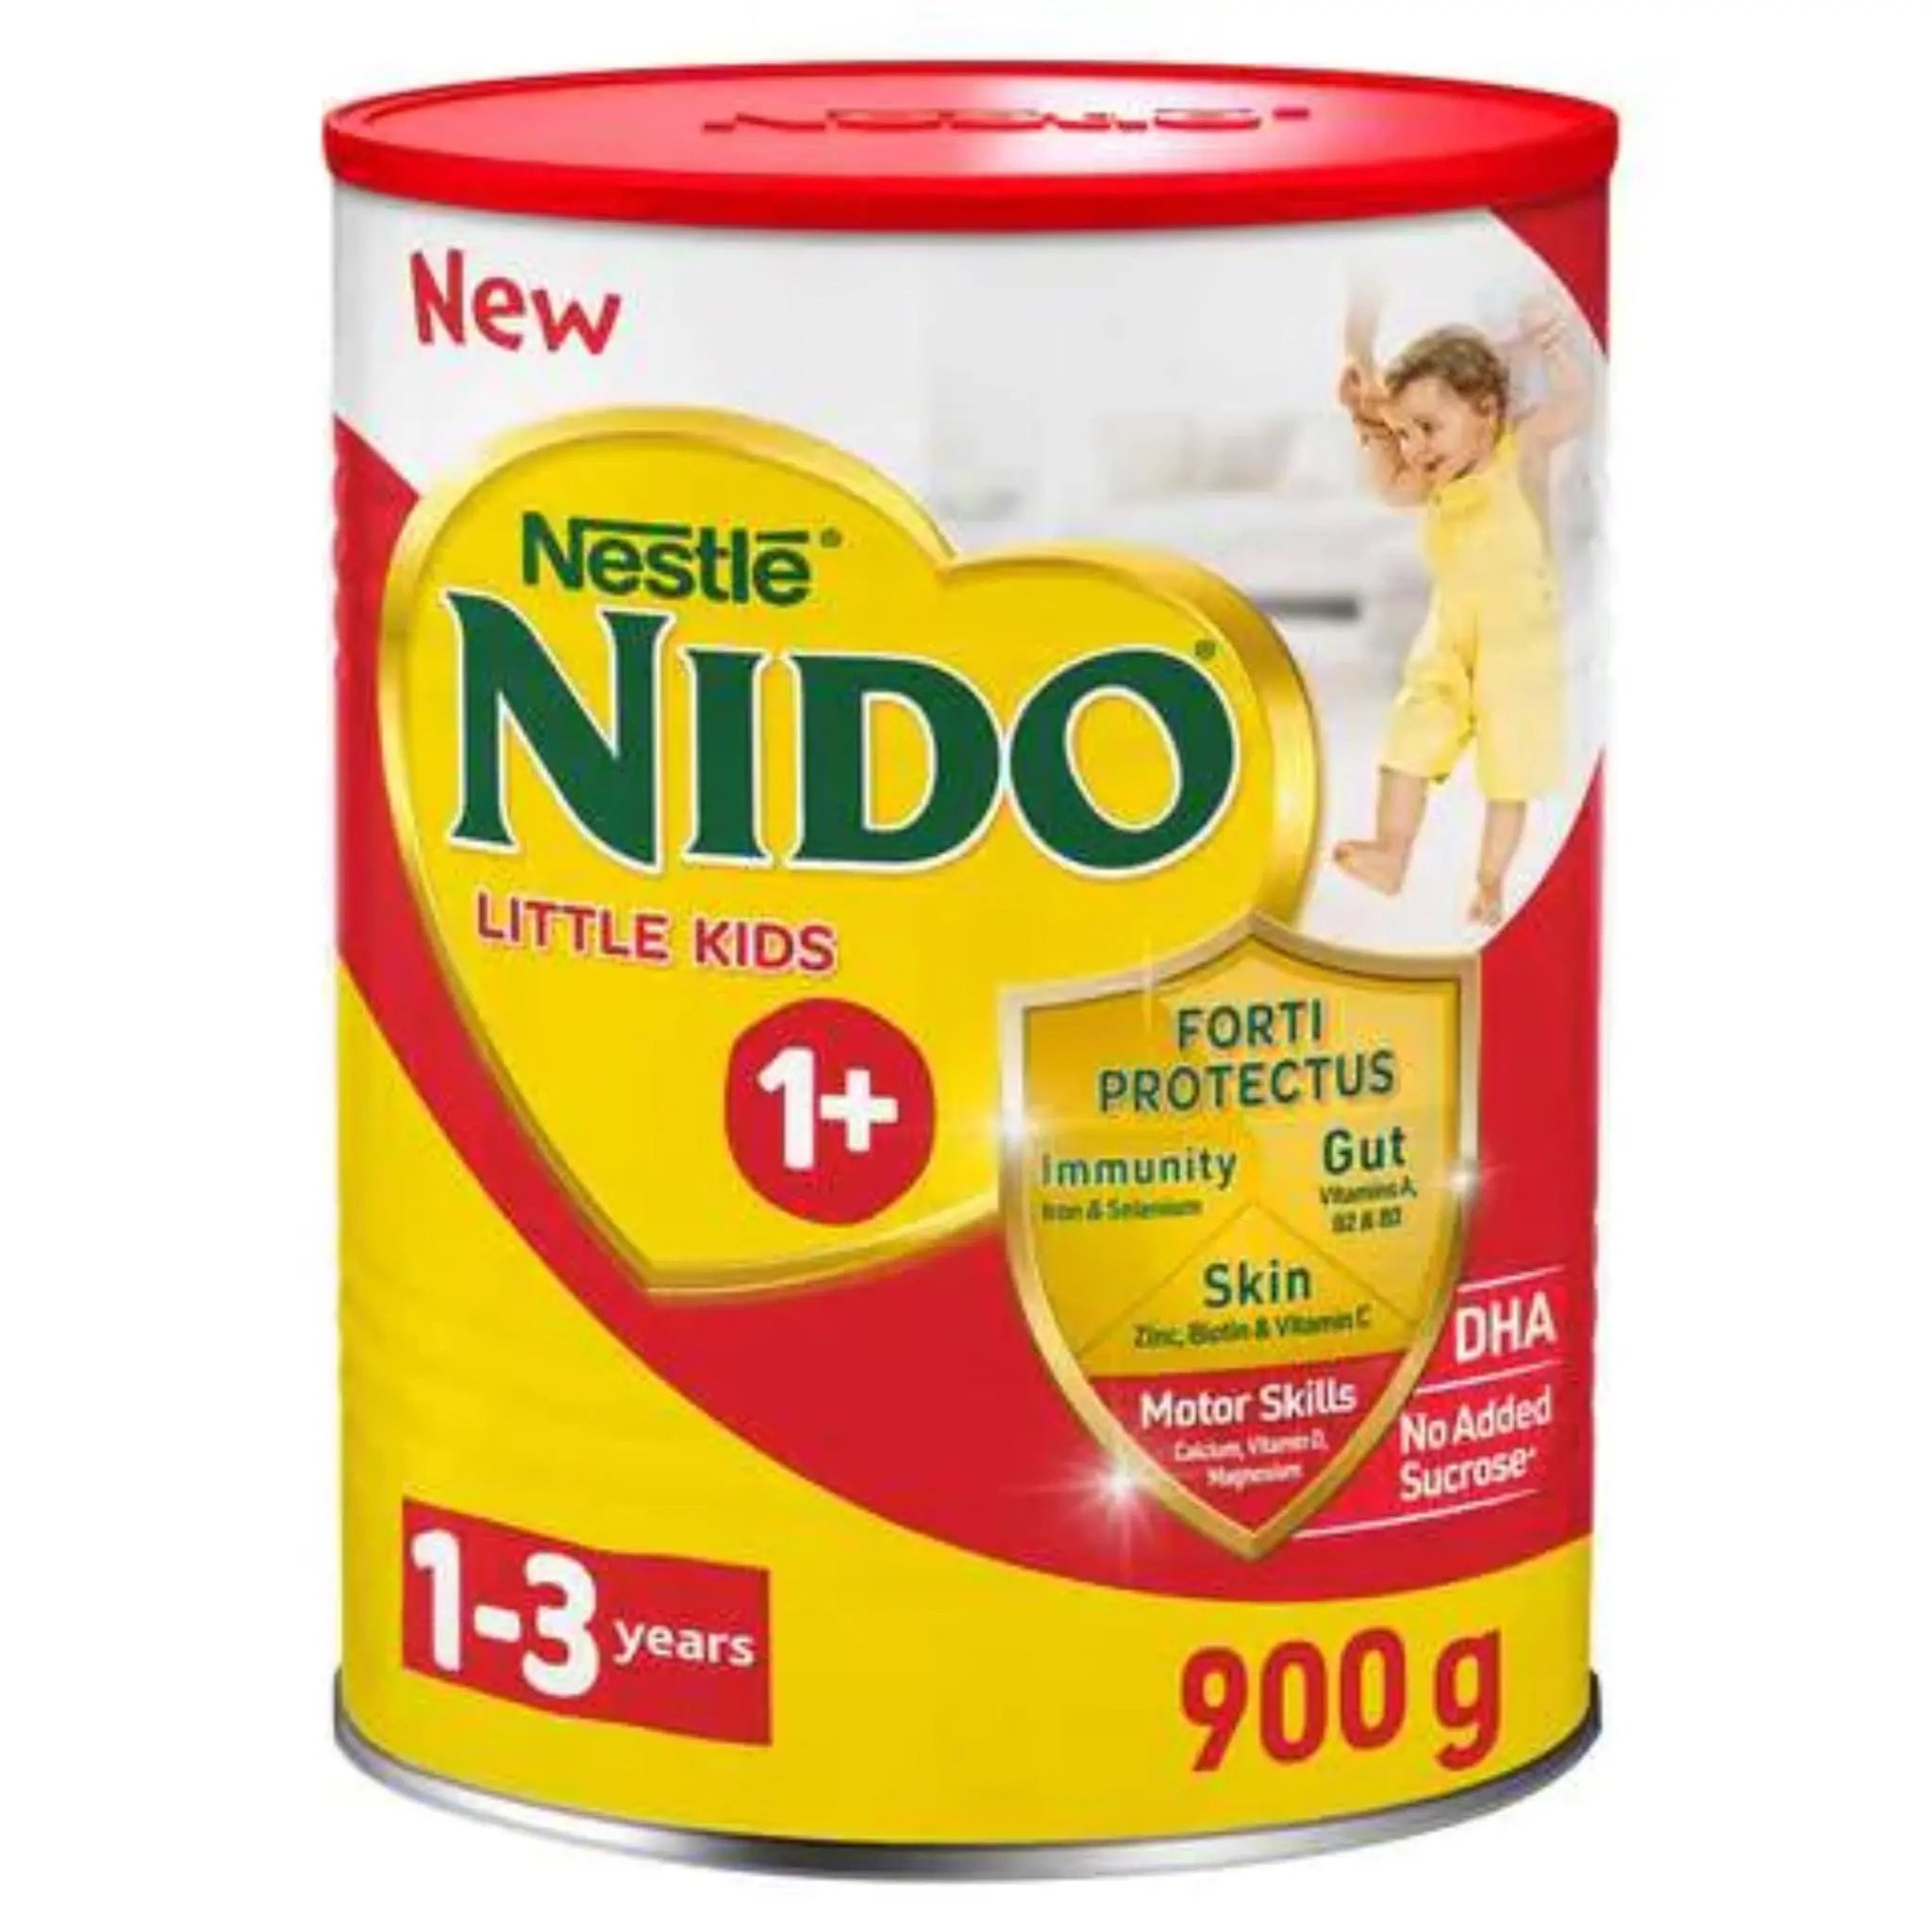 NIDO 1+ GUM 900G - Pack of 2 Marino.AE